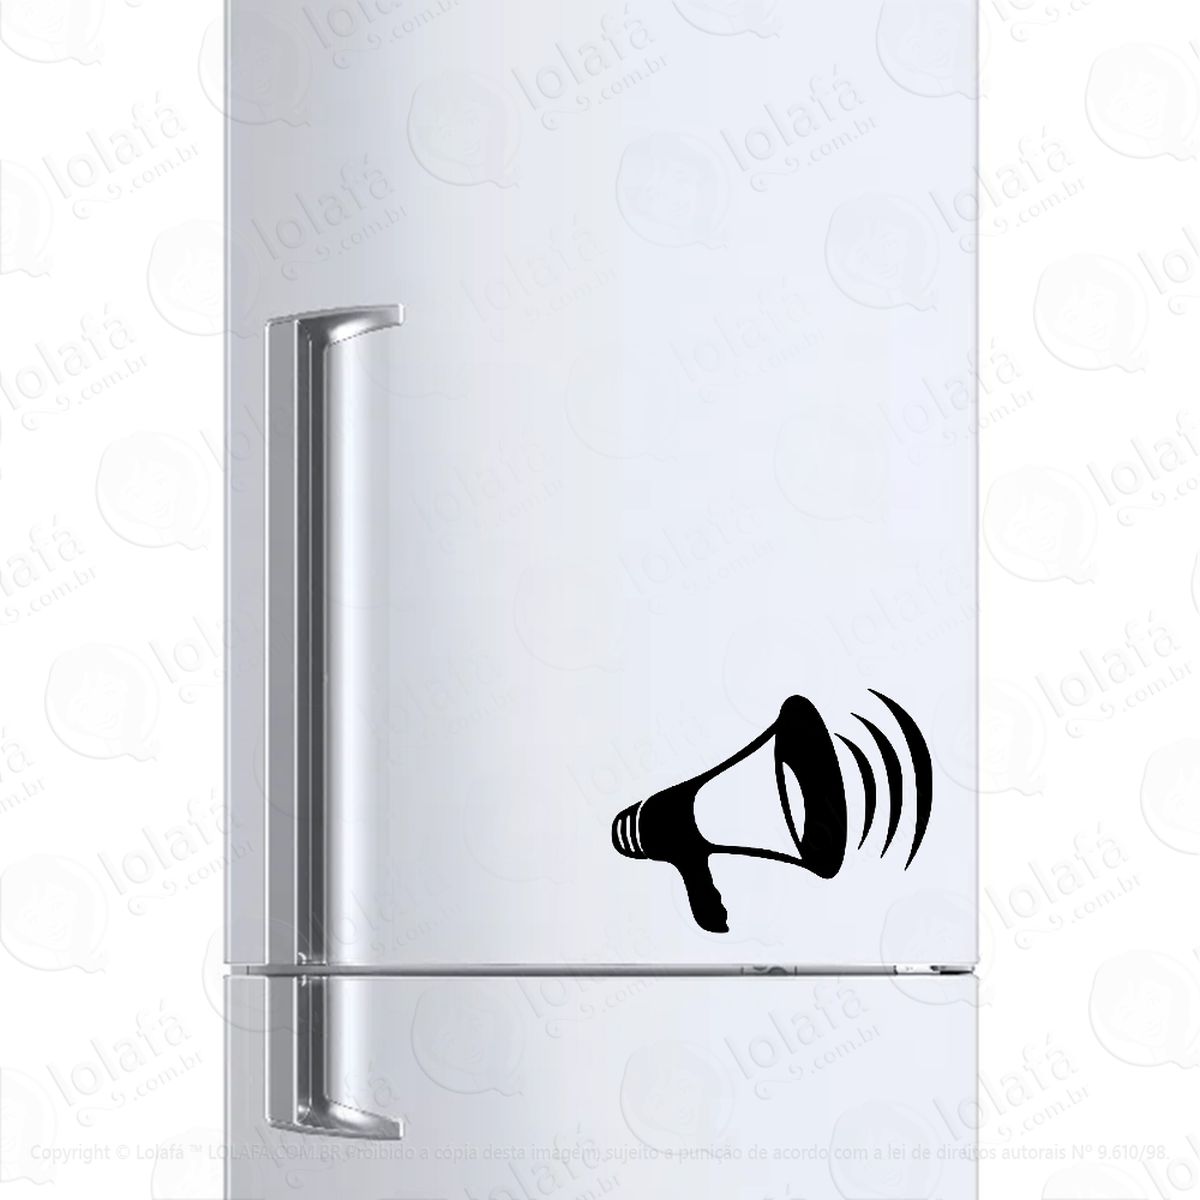 adesivo para geladeira megafone Áudio som alto mod:248